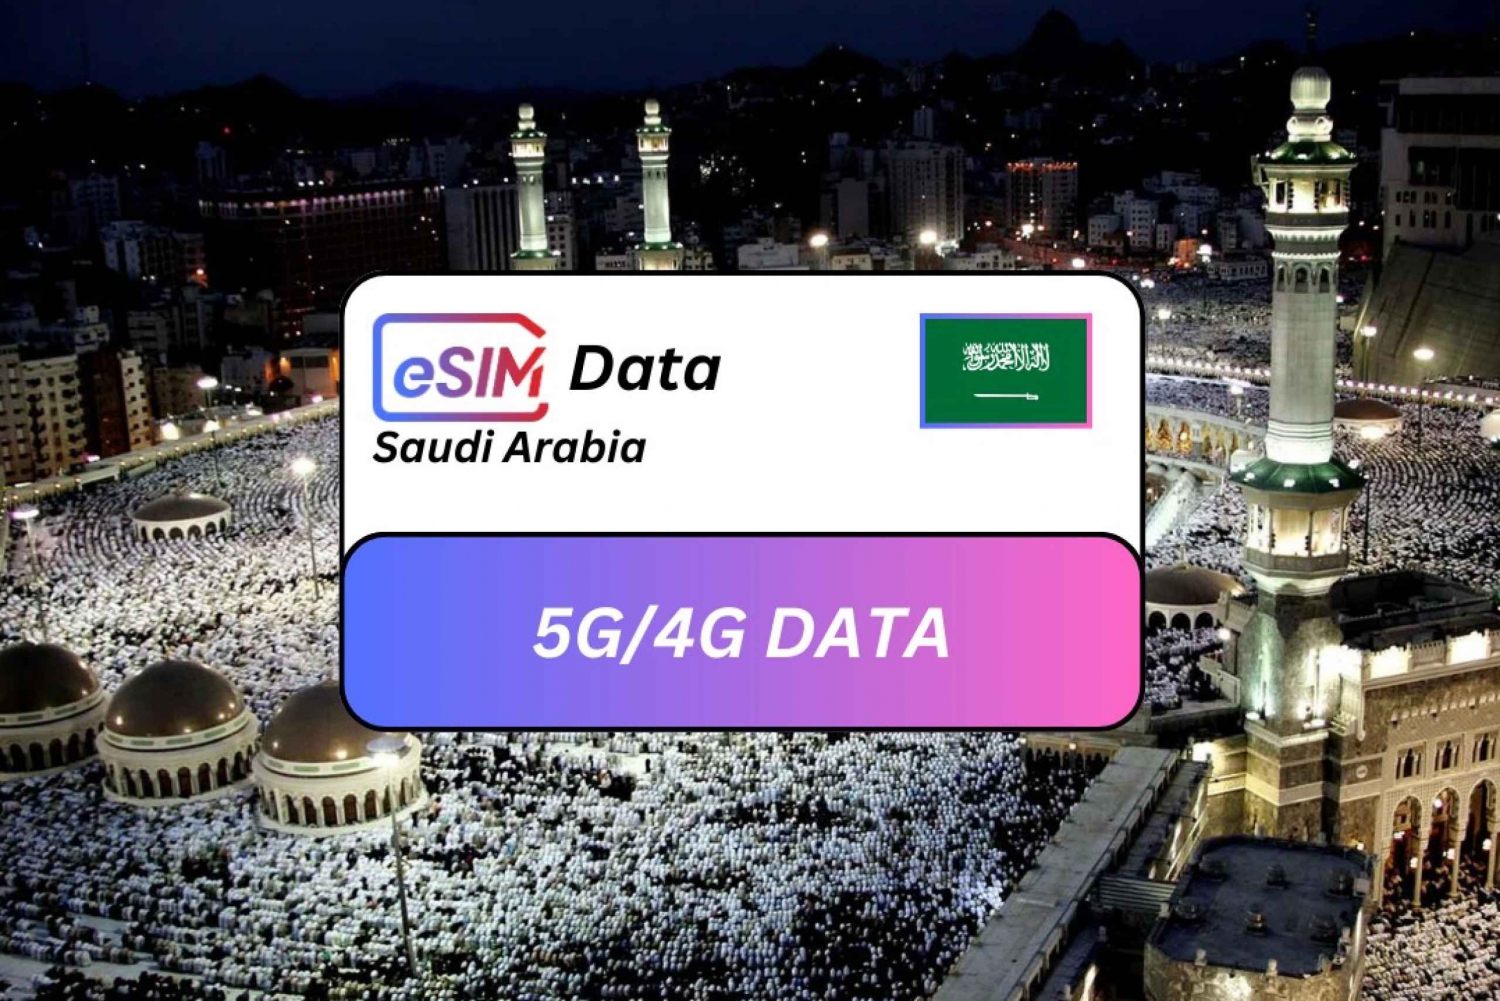 Mecca: Saudi Arabia eSIM Roaming Data Plan